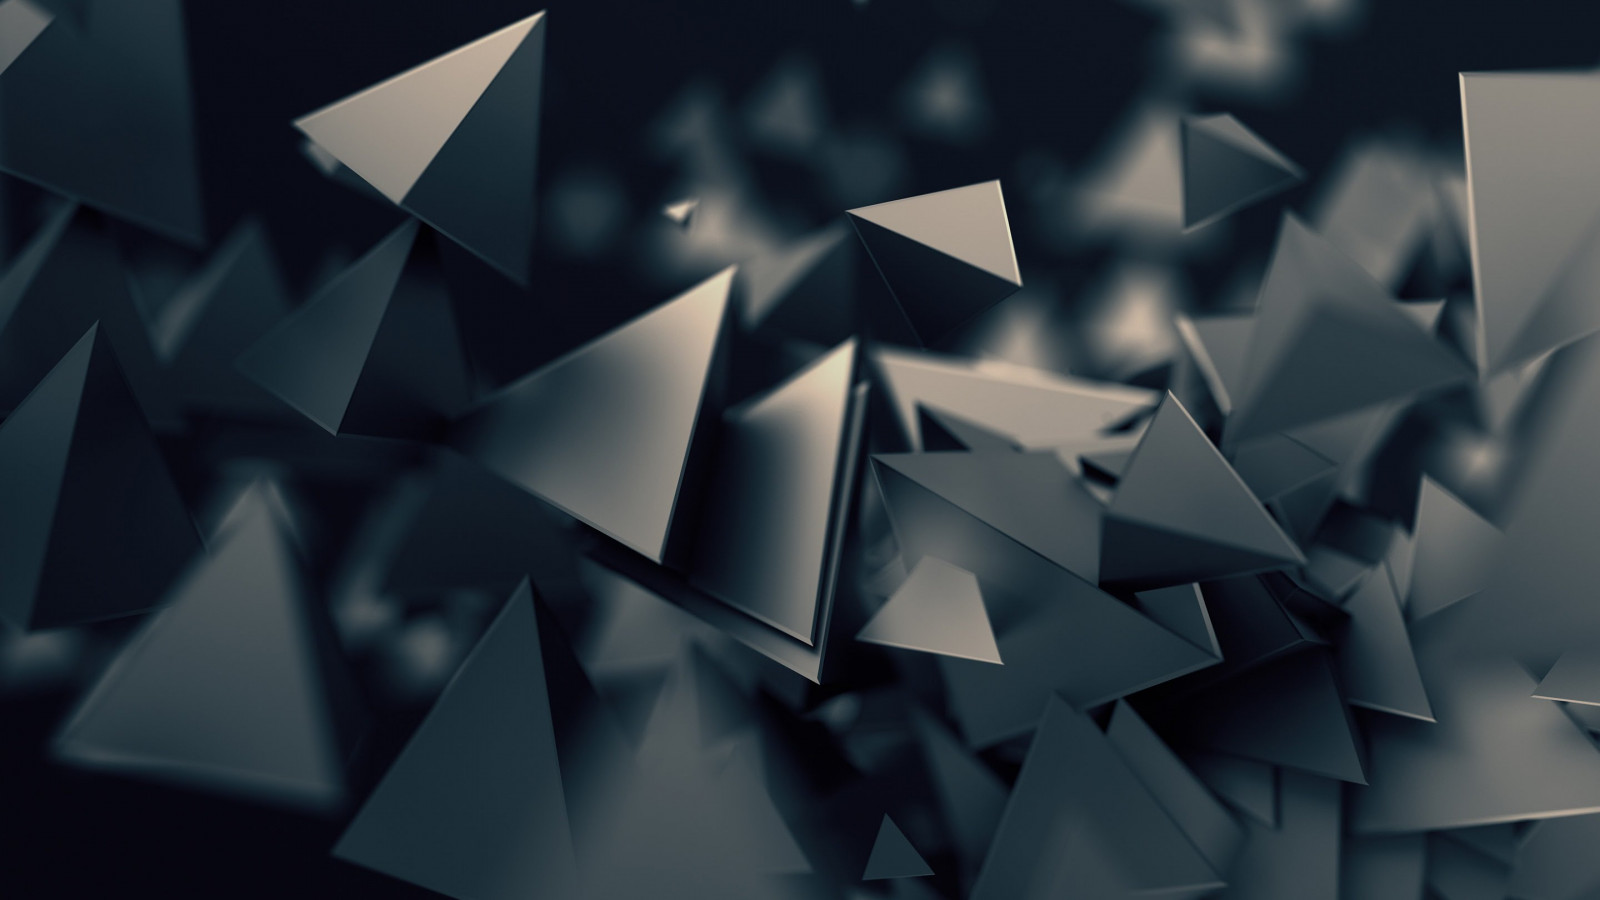 Triangular prisms wallpaper 1600x900